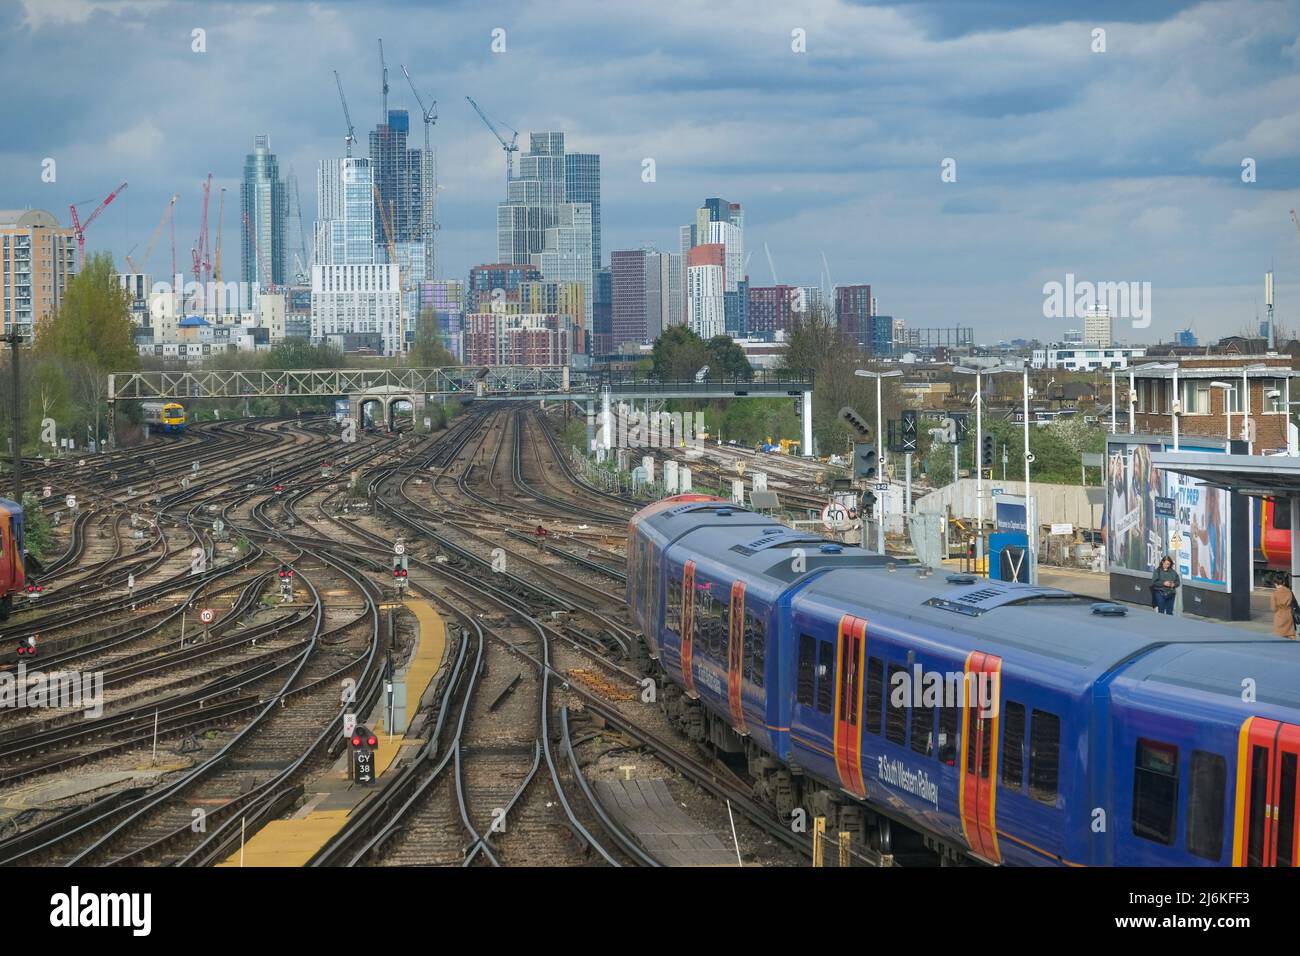 Londres - avril 2022 : trains et de nombreuses voies de chemin de fer de la gare de Clapham Junction dans le sud-ouest de Londres Banque D'Images